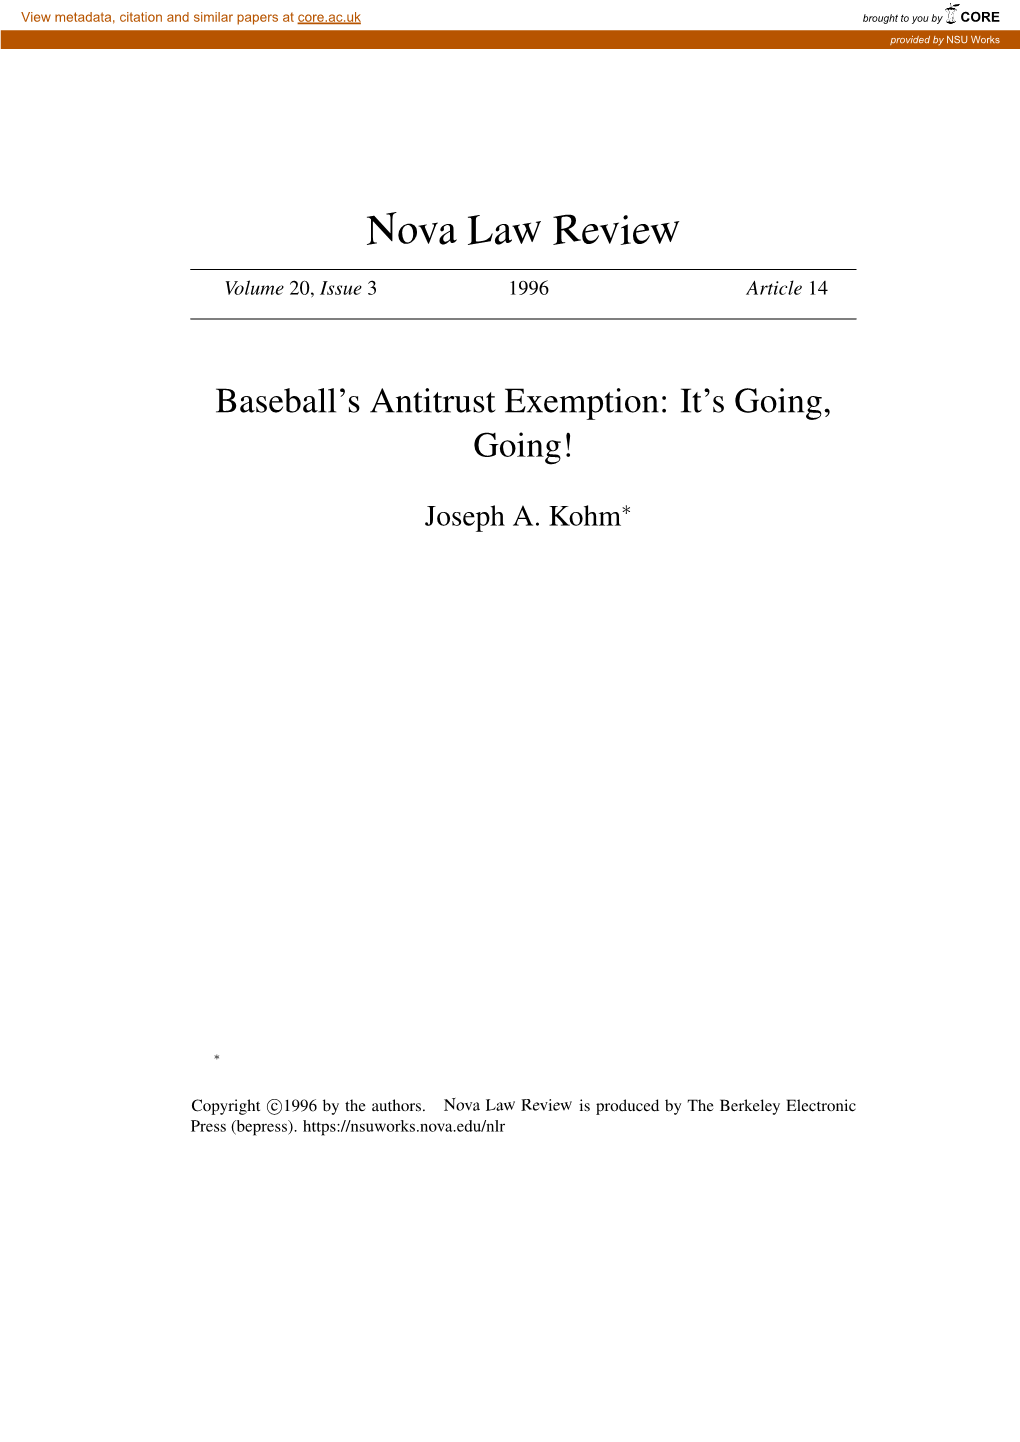 Baseball's Antitrust Exemption: It's Going, Going…Gone! Baseball's Antitrust Exemption: It's Going, Going